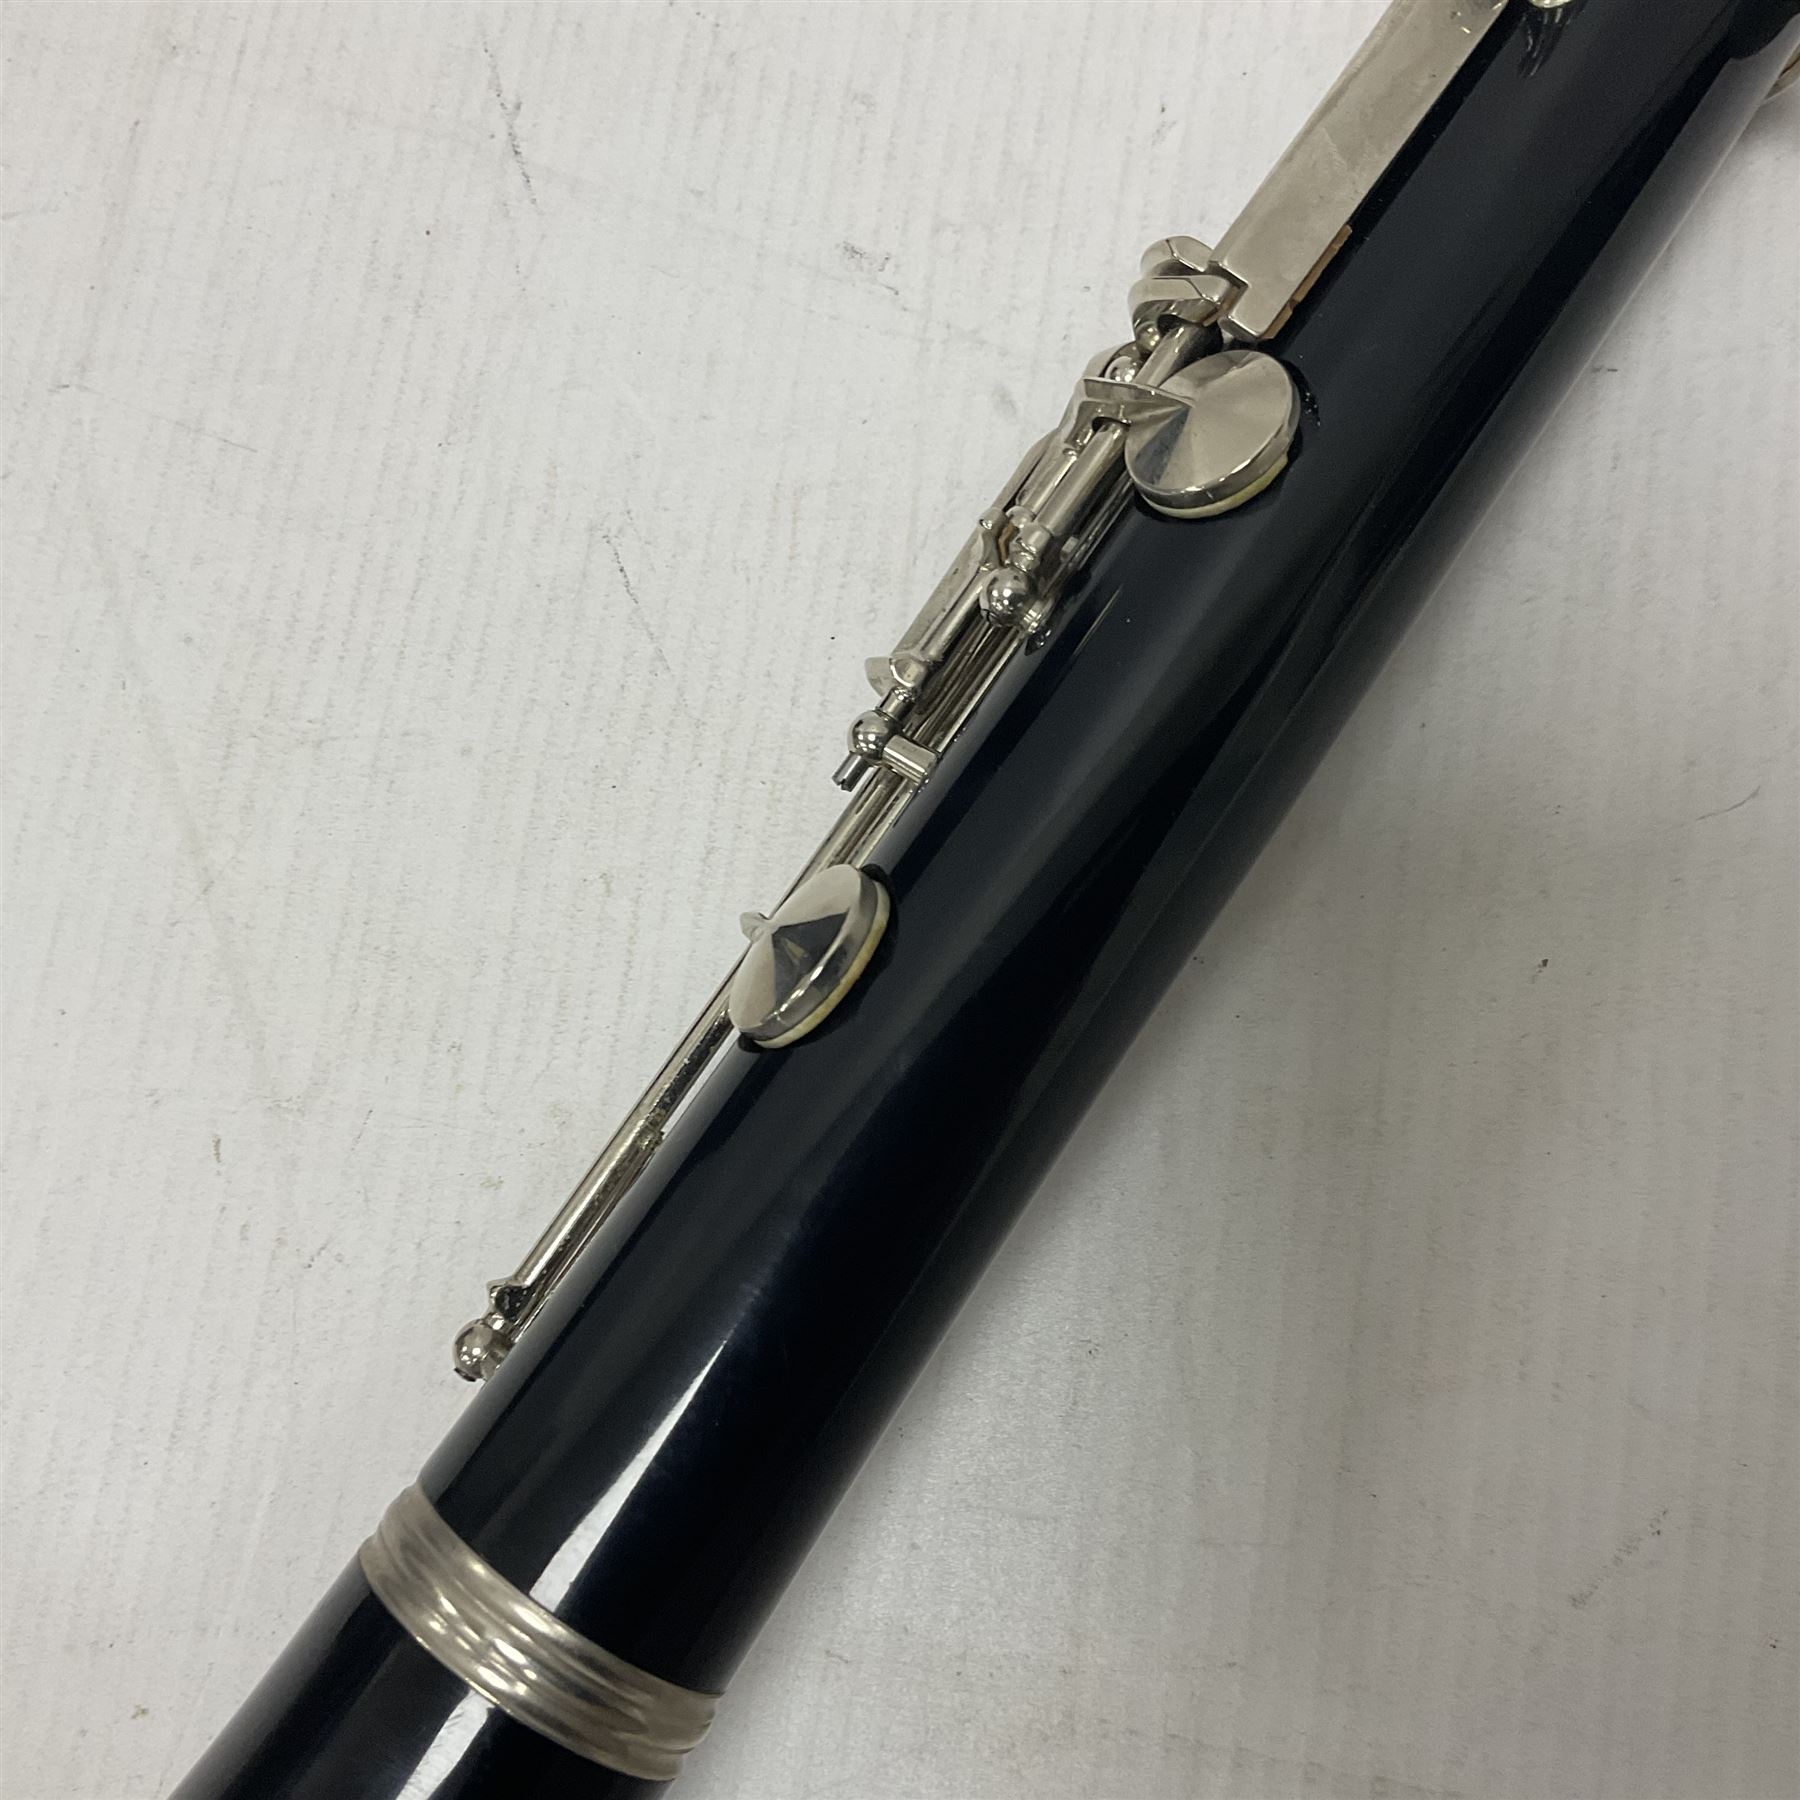 American Vito Reso-Tone 3 clarinet - Image 23 of 24